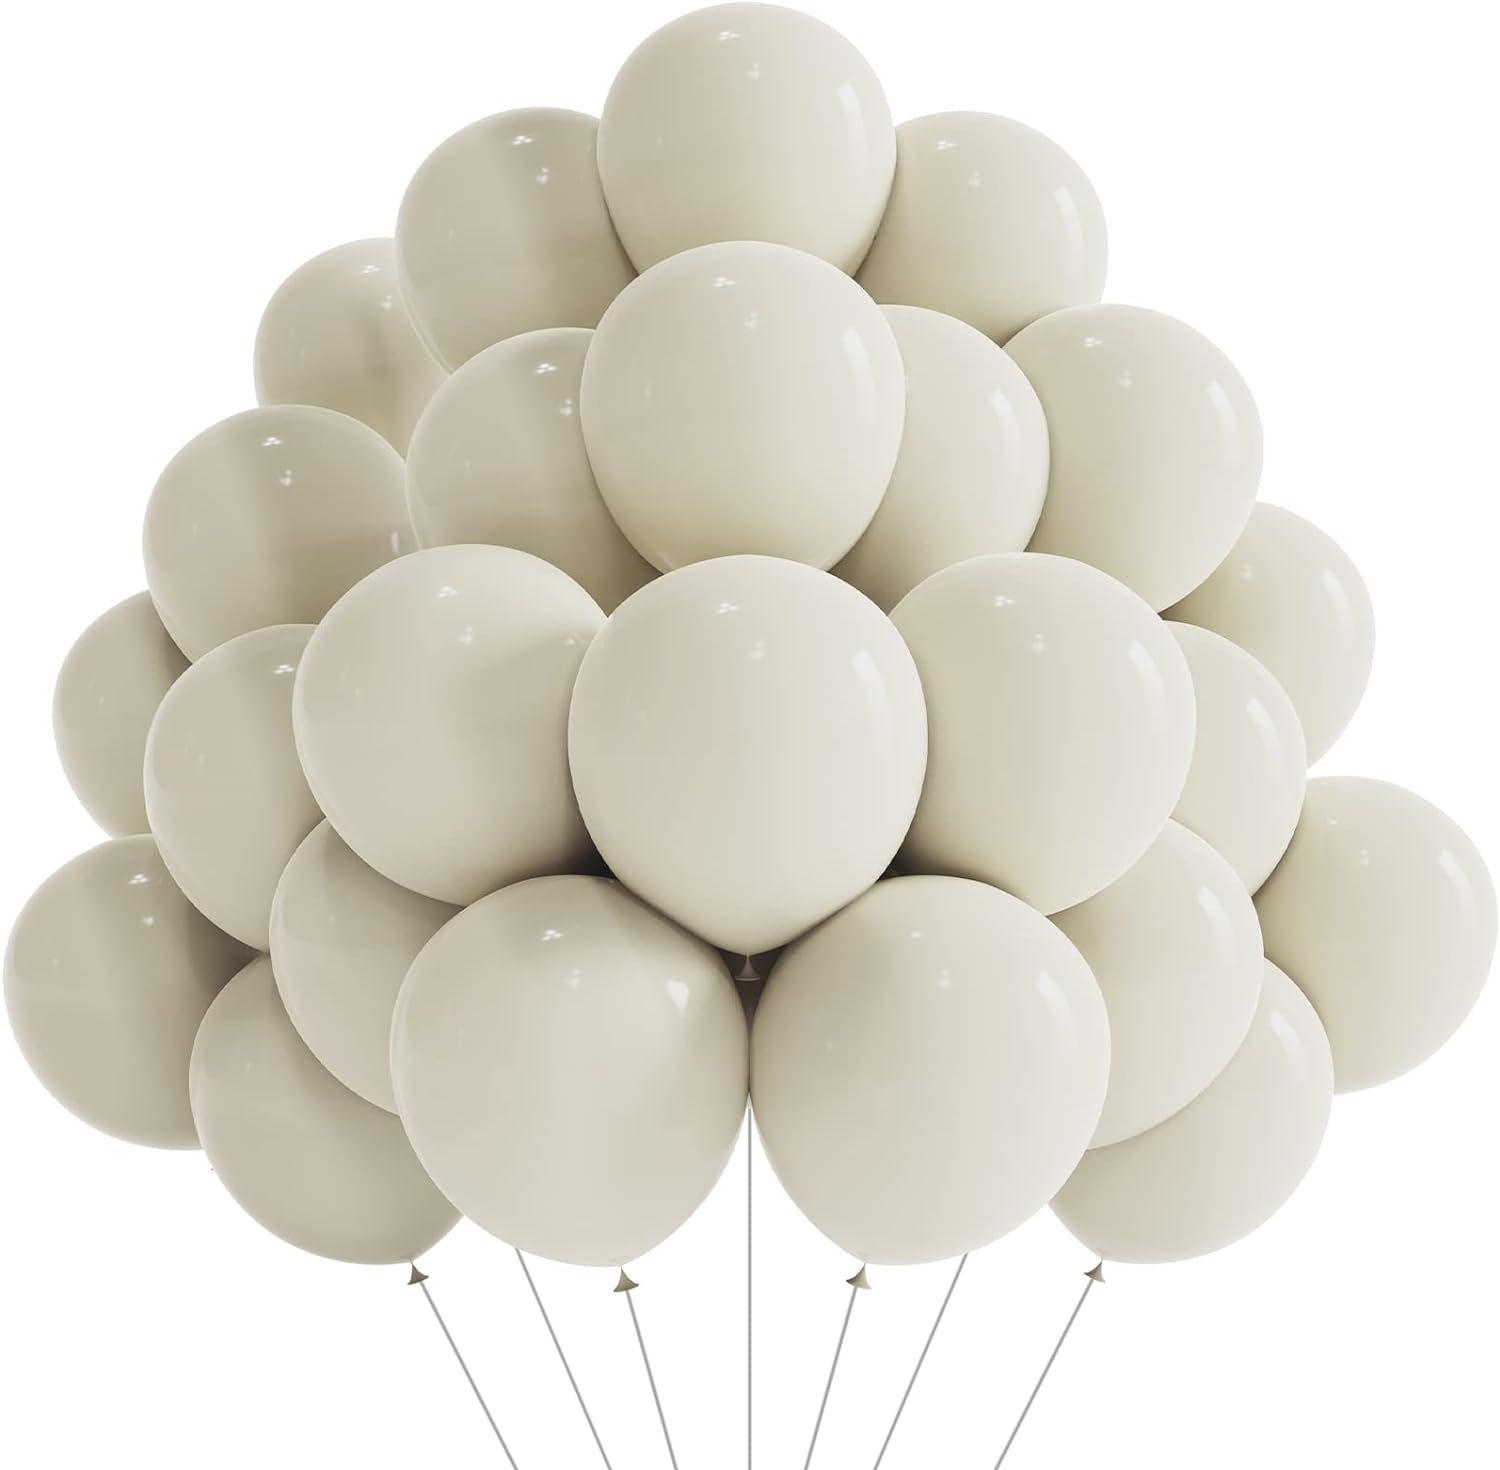 DAZAKA Ballon Abricot, Ballon Beige 50 Pièces - 12 30 cm - LATEX NATUREL, Ballon Nude, Ballon Baudruche